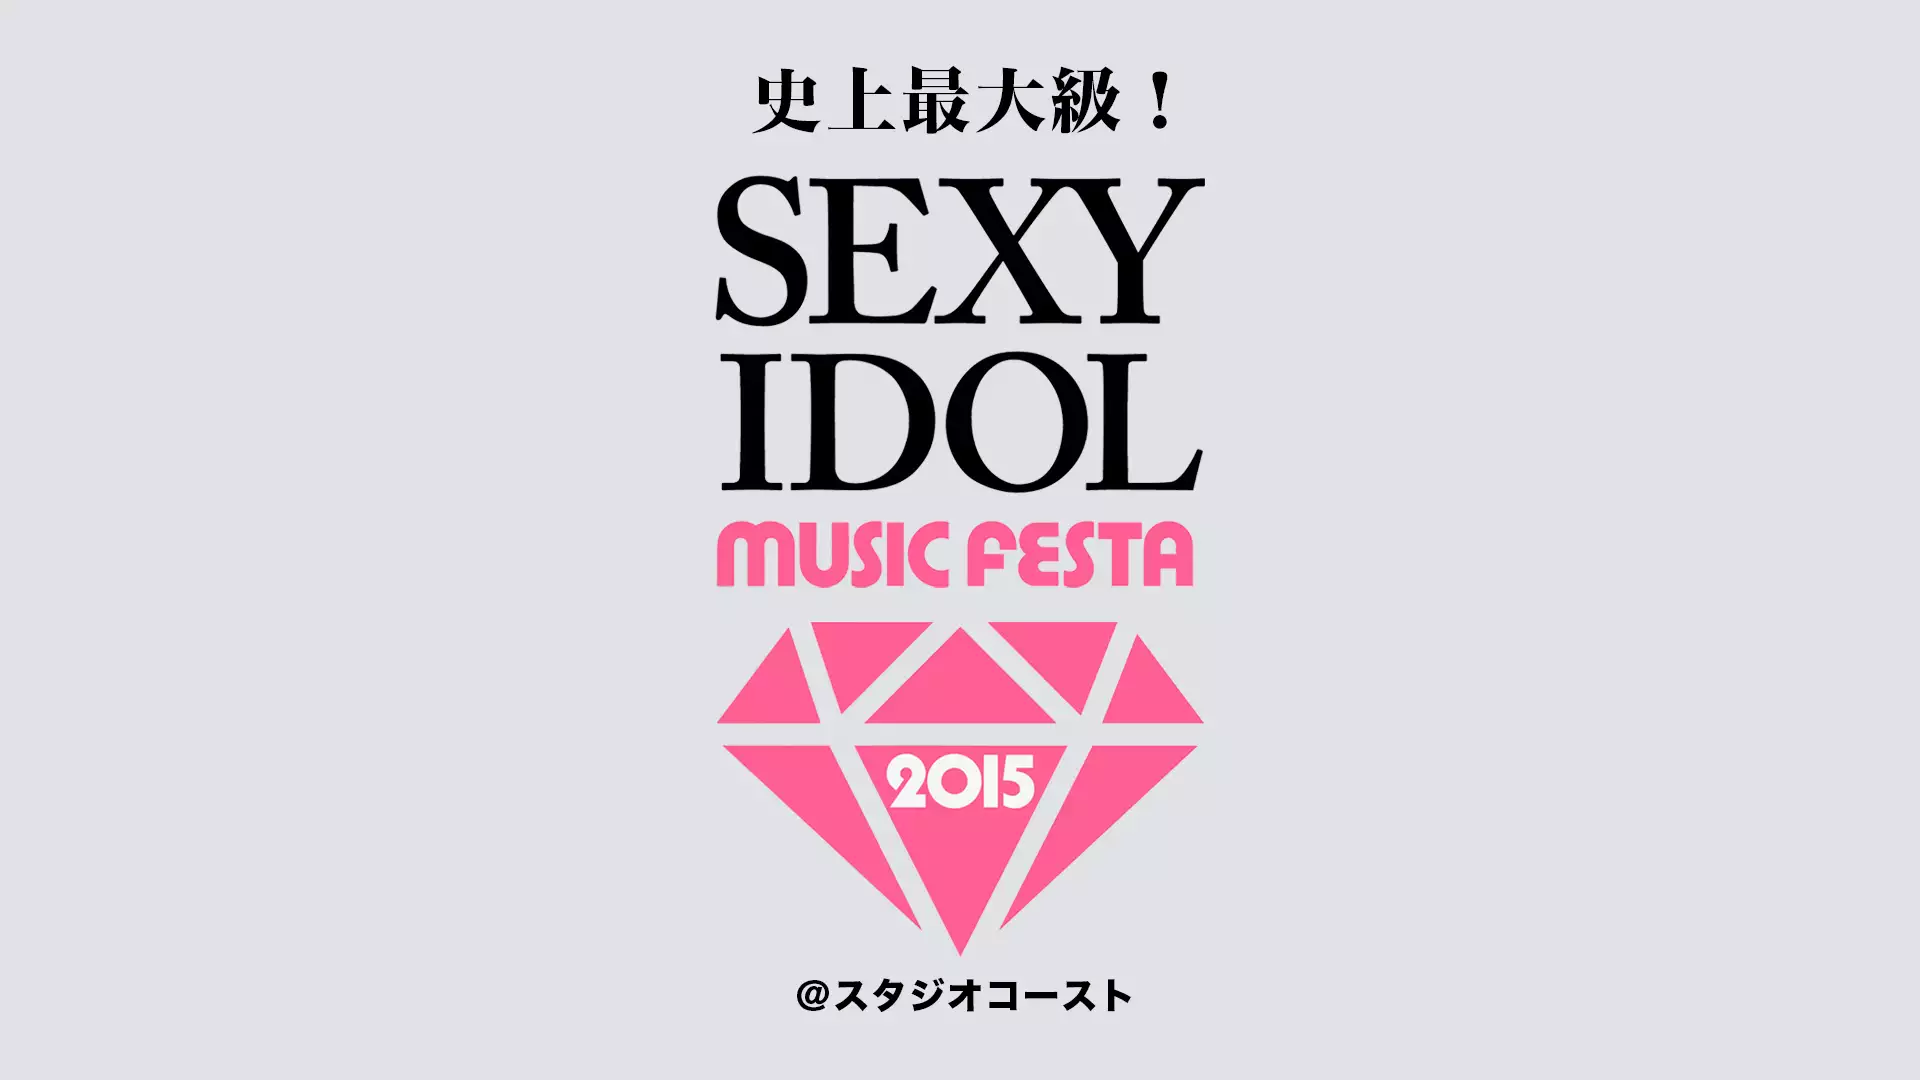 史上最大級！セクシー・アイドル・ライブ feat. SEXY IDOL MUSIC FESTA 2015 